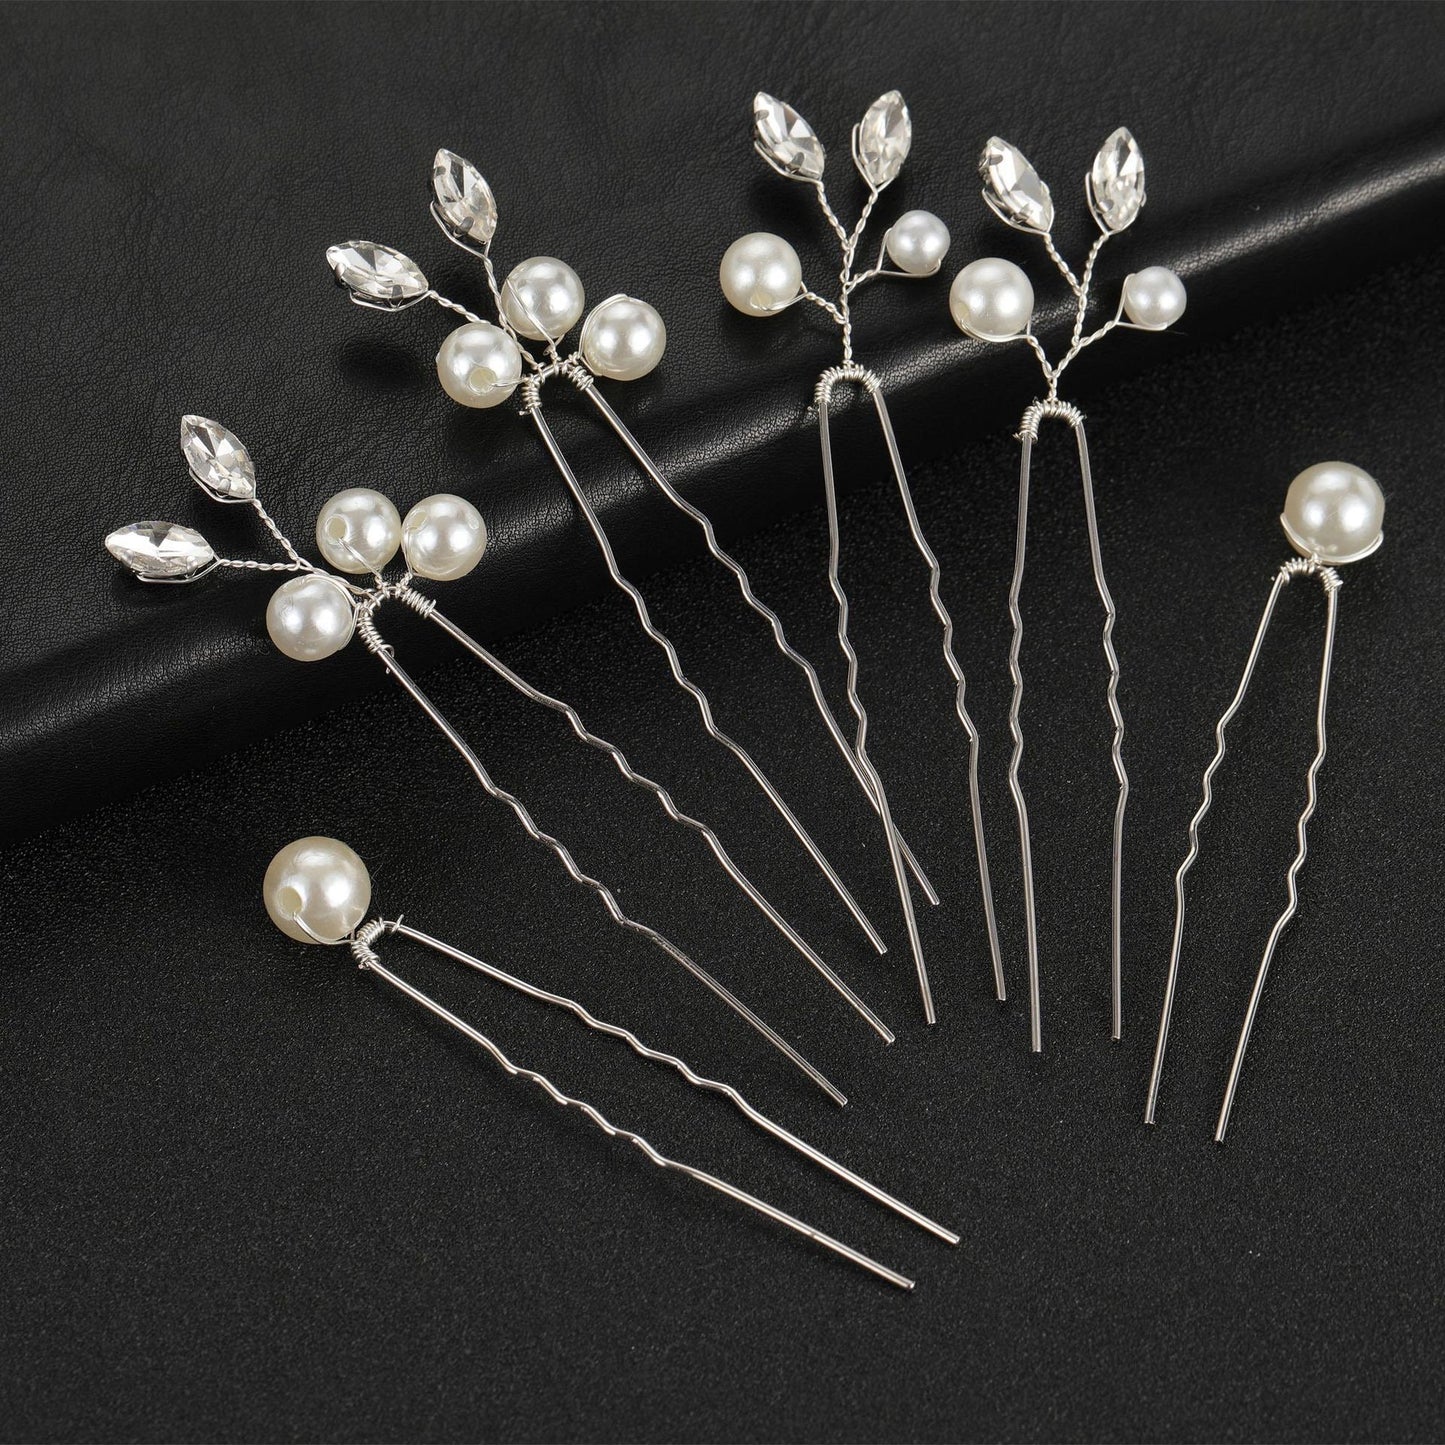 6er-Set Braut-Haarnadeln, Perlen- und Kristall-Haarnadel, Hochzeits-Haarspange, Gold/Silber-Haarschmuck für Bräute, Hochzeits-Perlen-Haarnadel